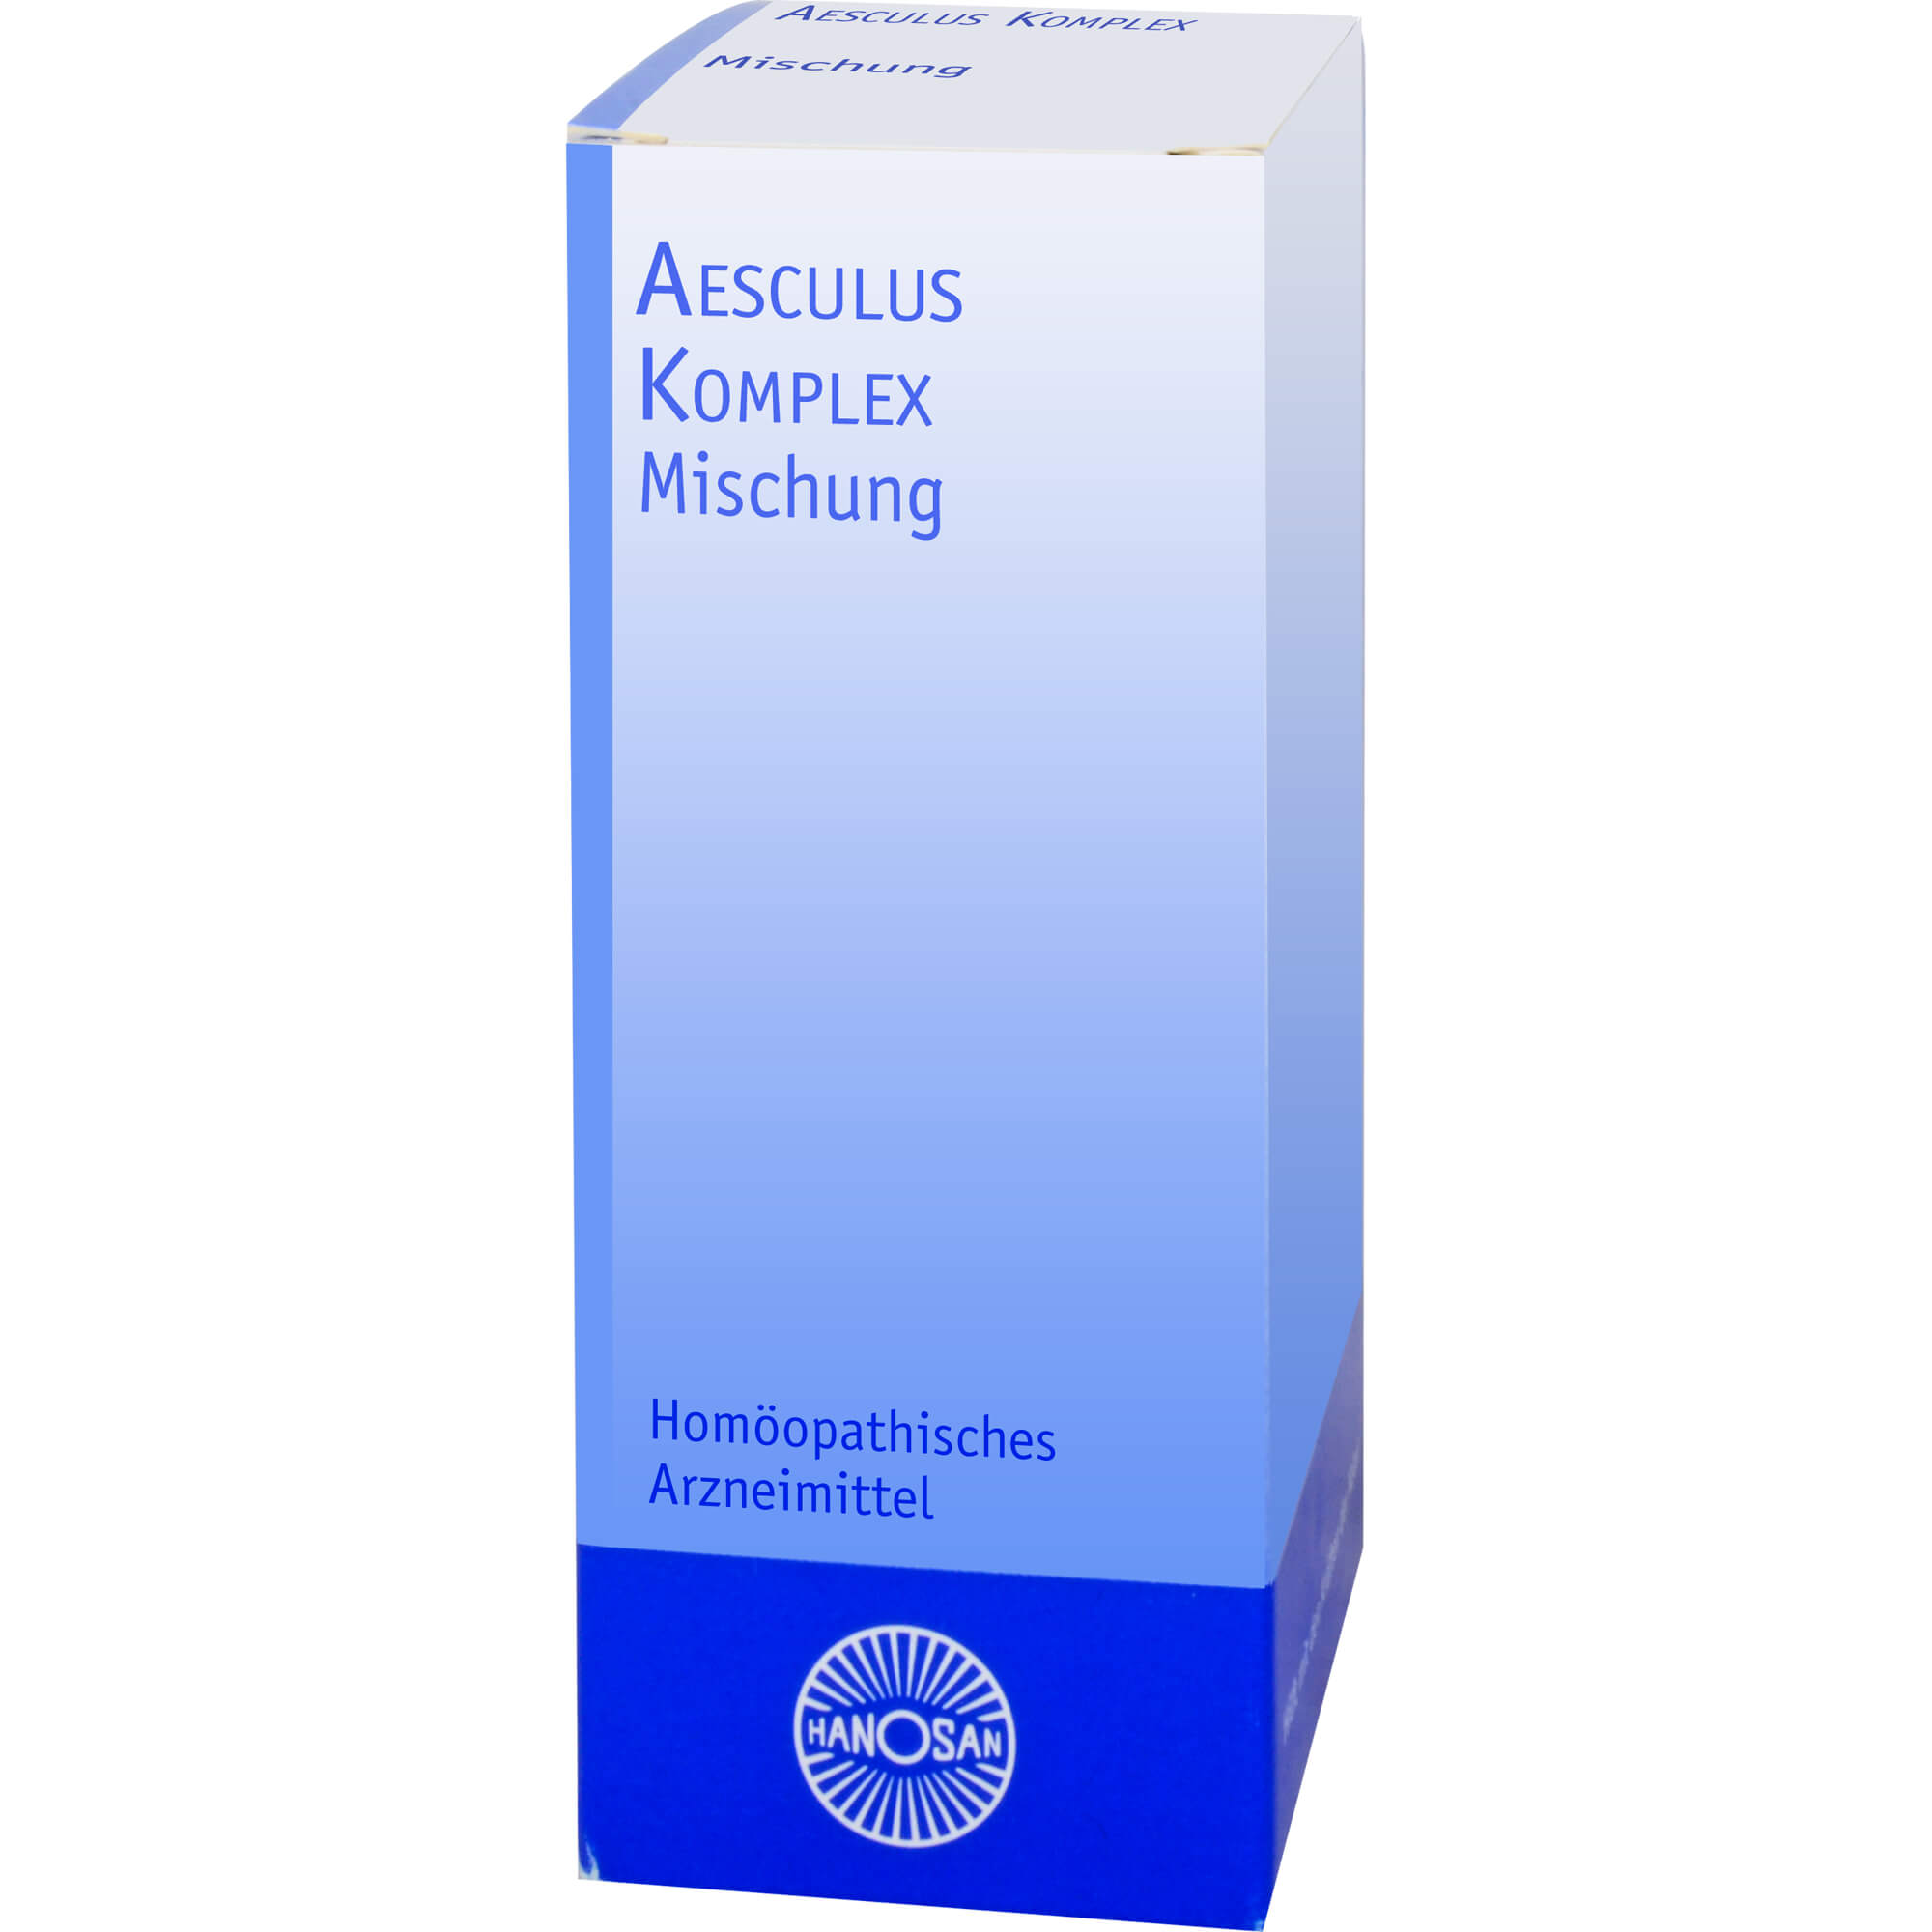 AESCULUS KOMPLEX fluessig. Homöopathische Arzneimittel.